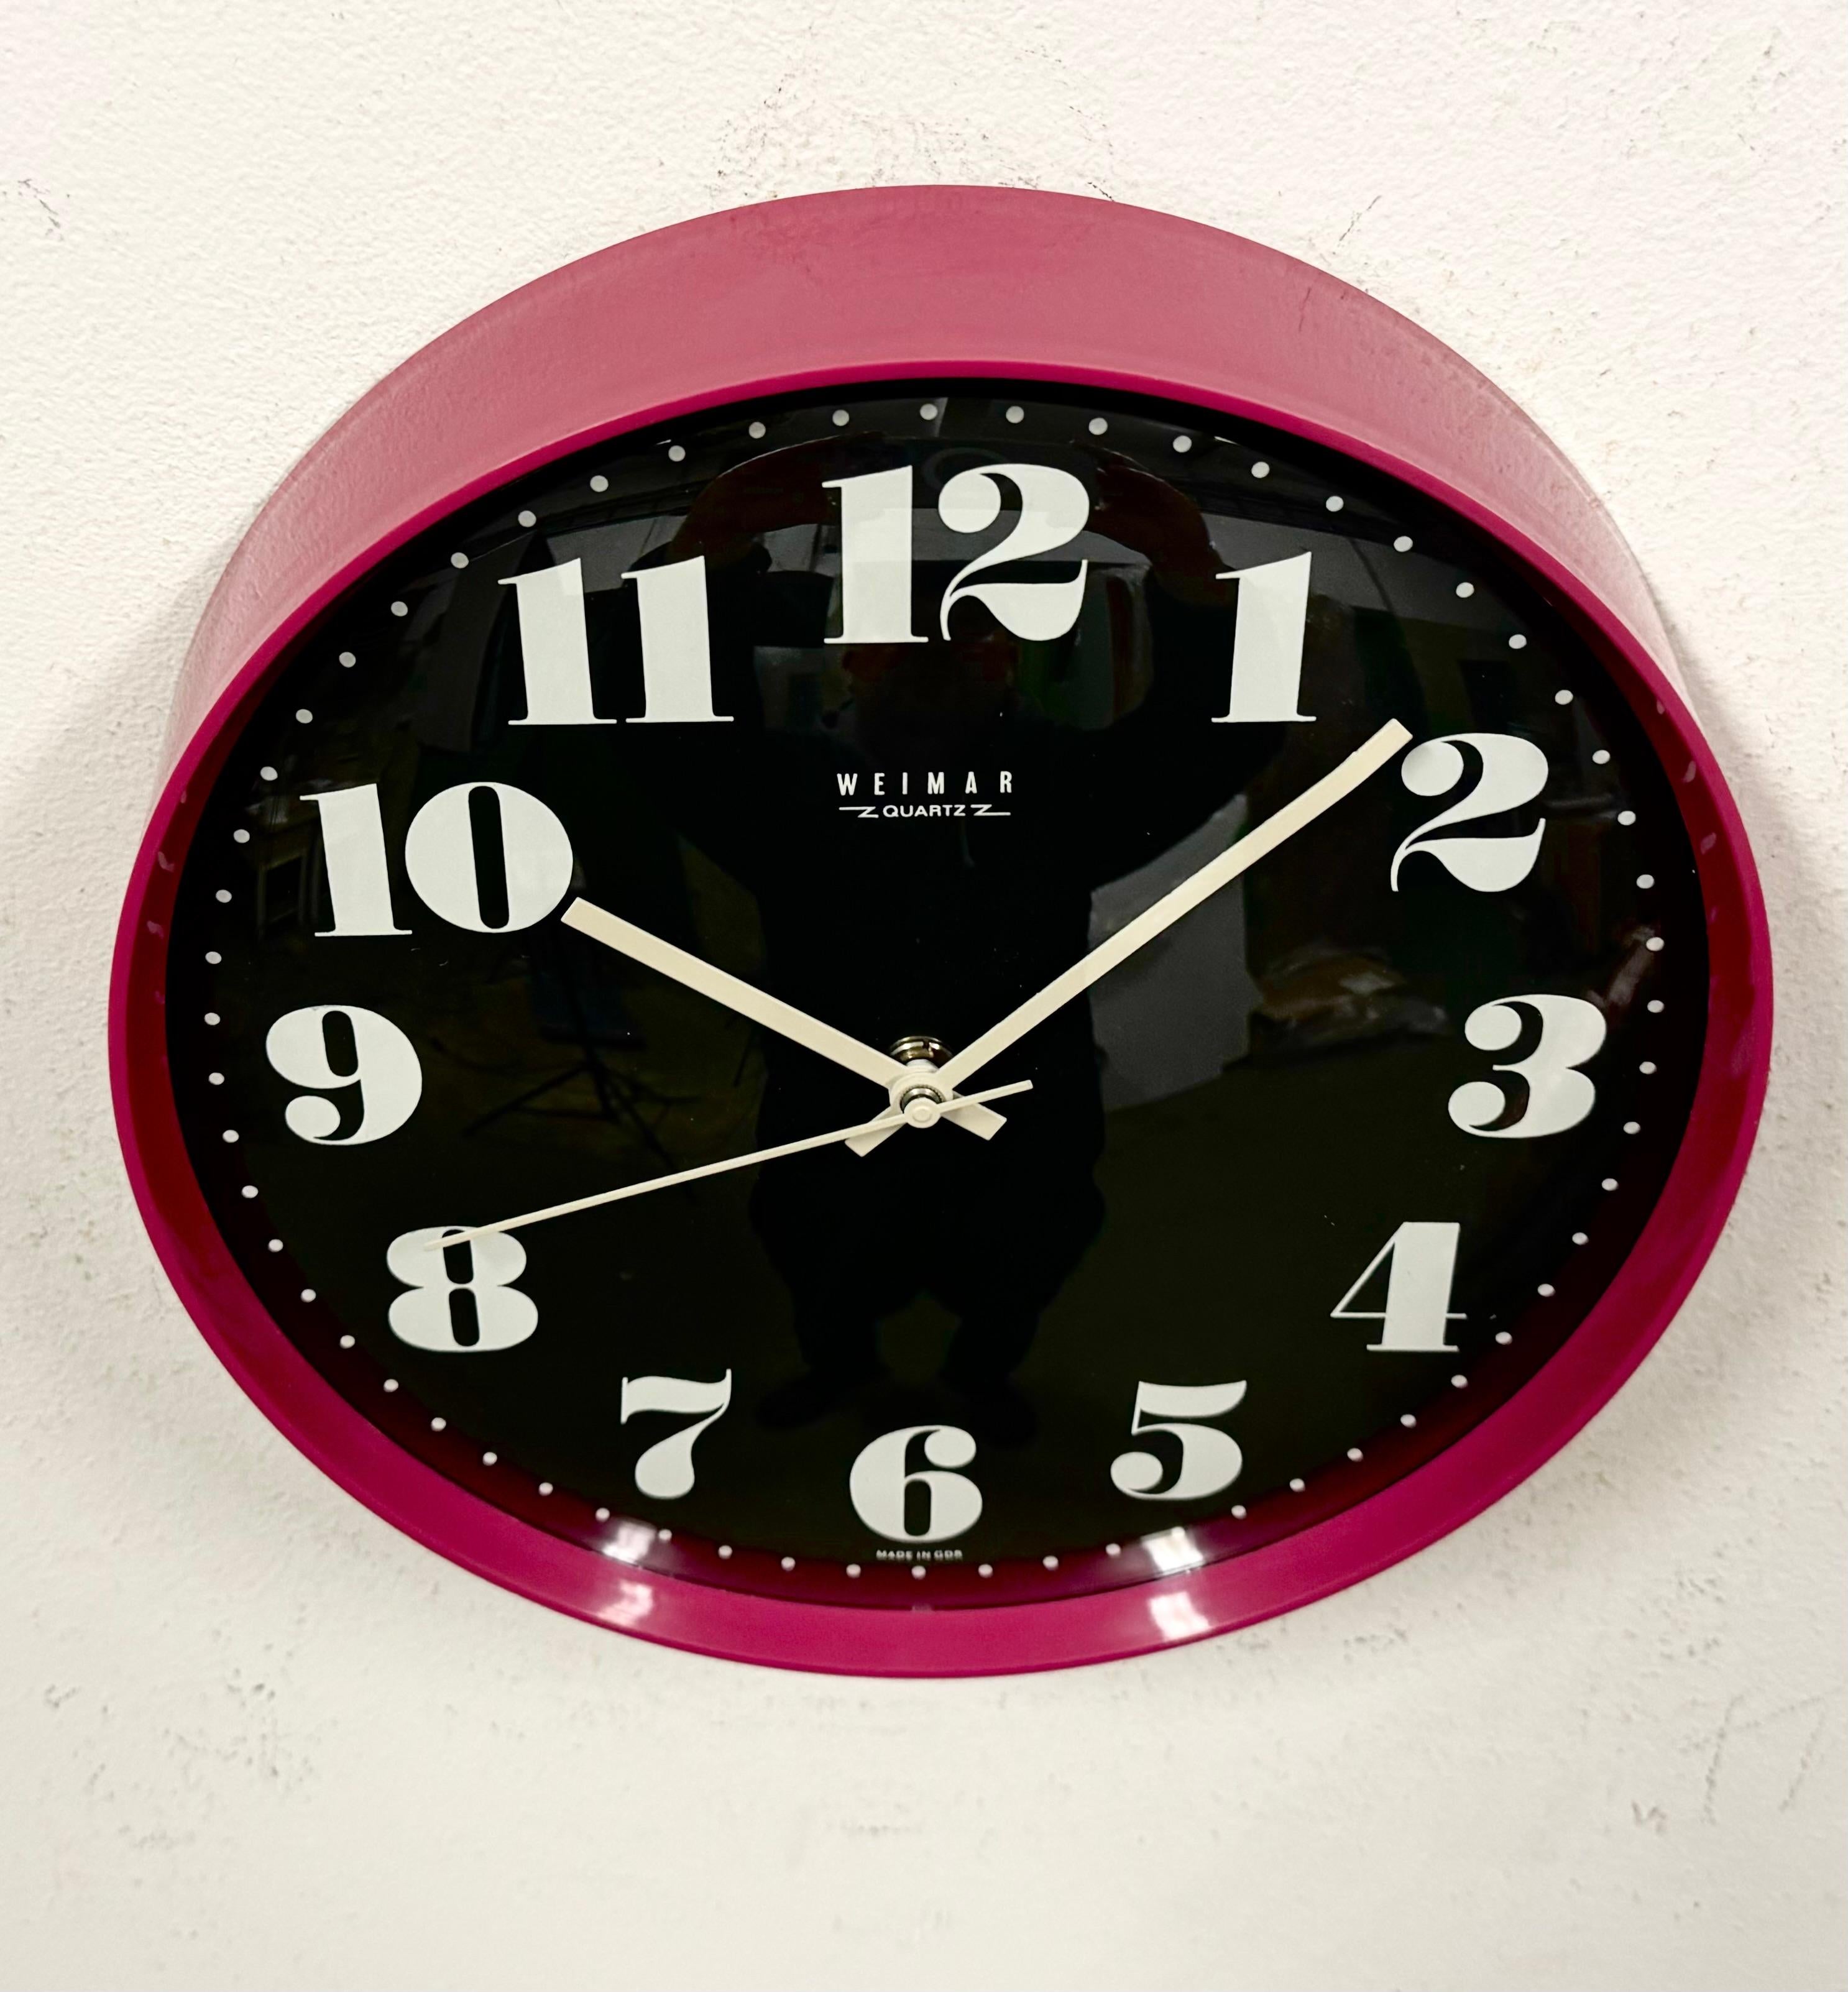 weimar quartz clock